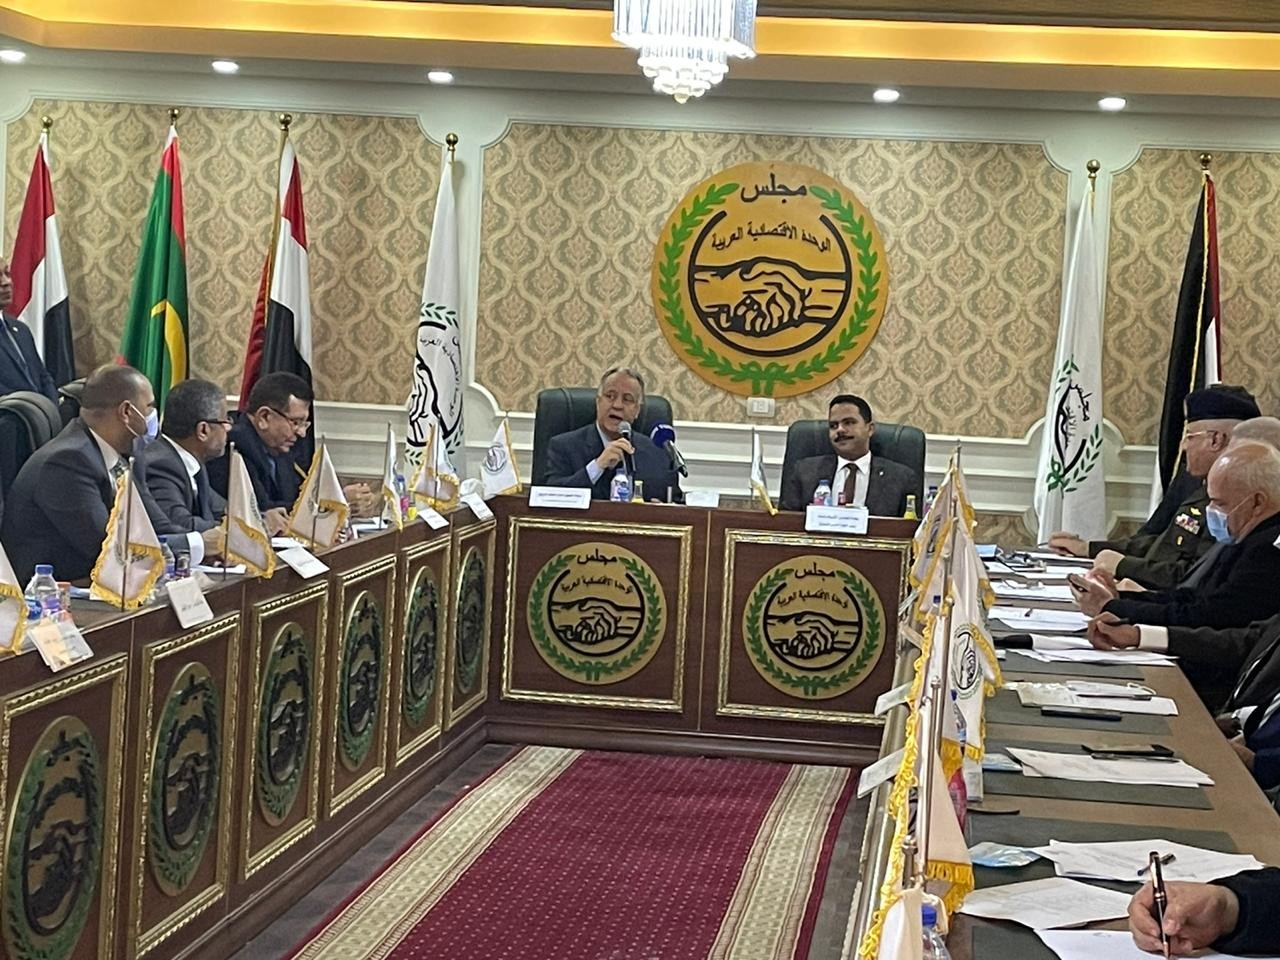 مجلس الوحدة الاقتصادية يعلن تأسيس جهاز عربي للتسويق